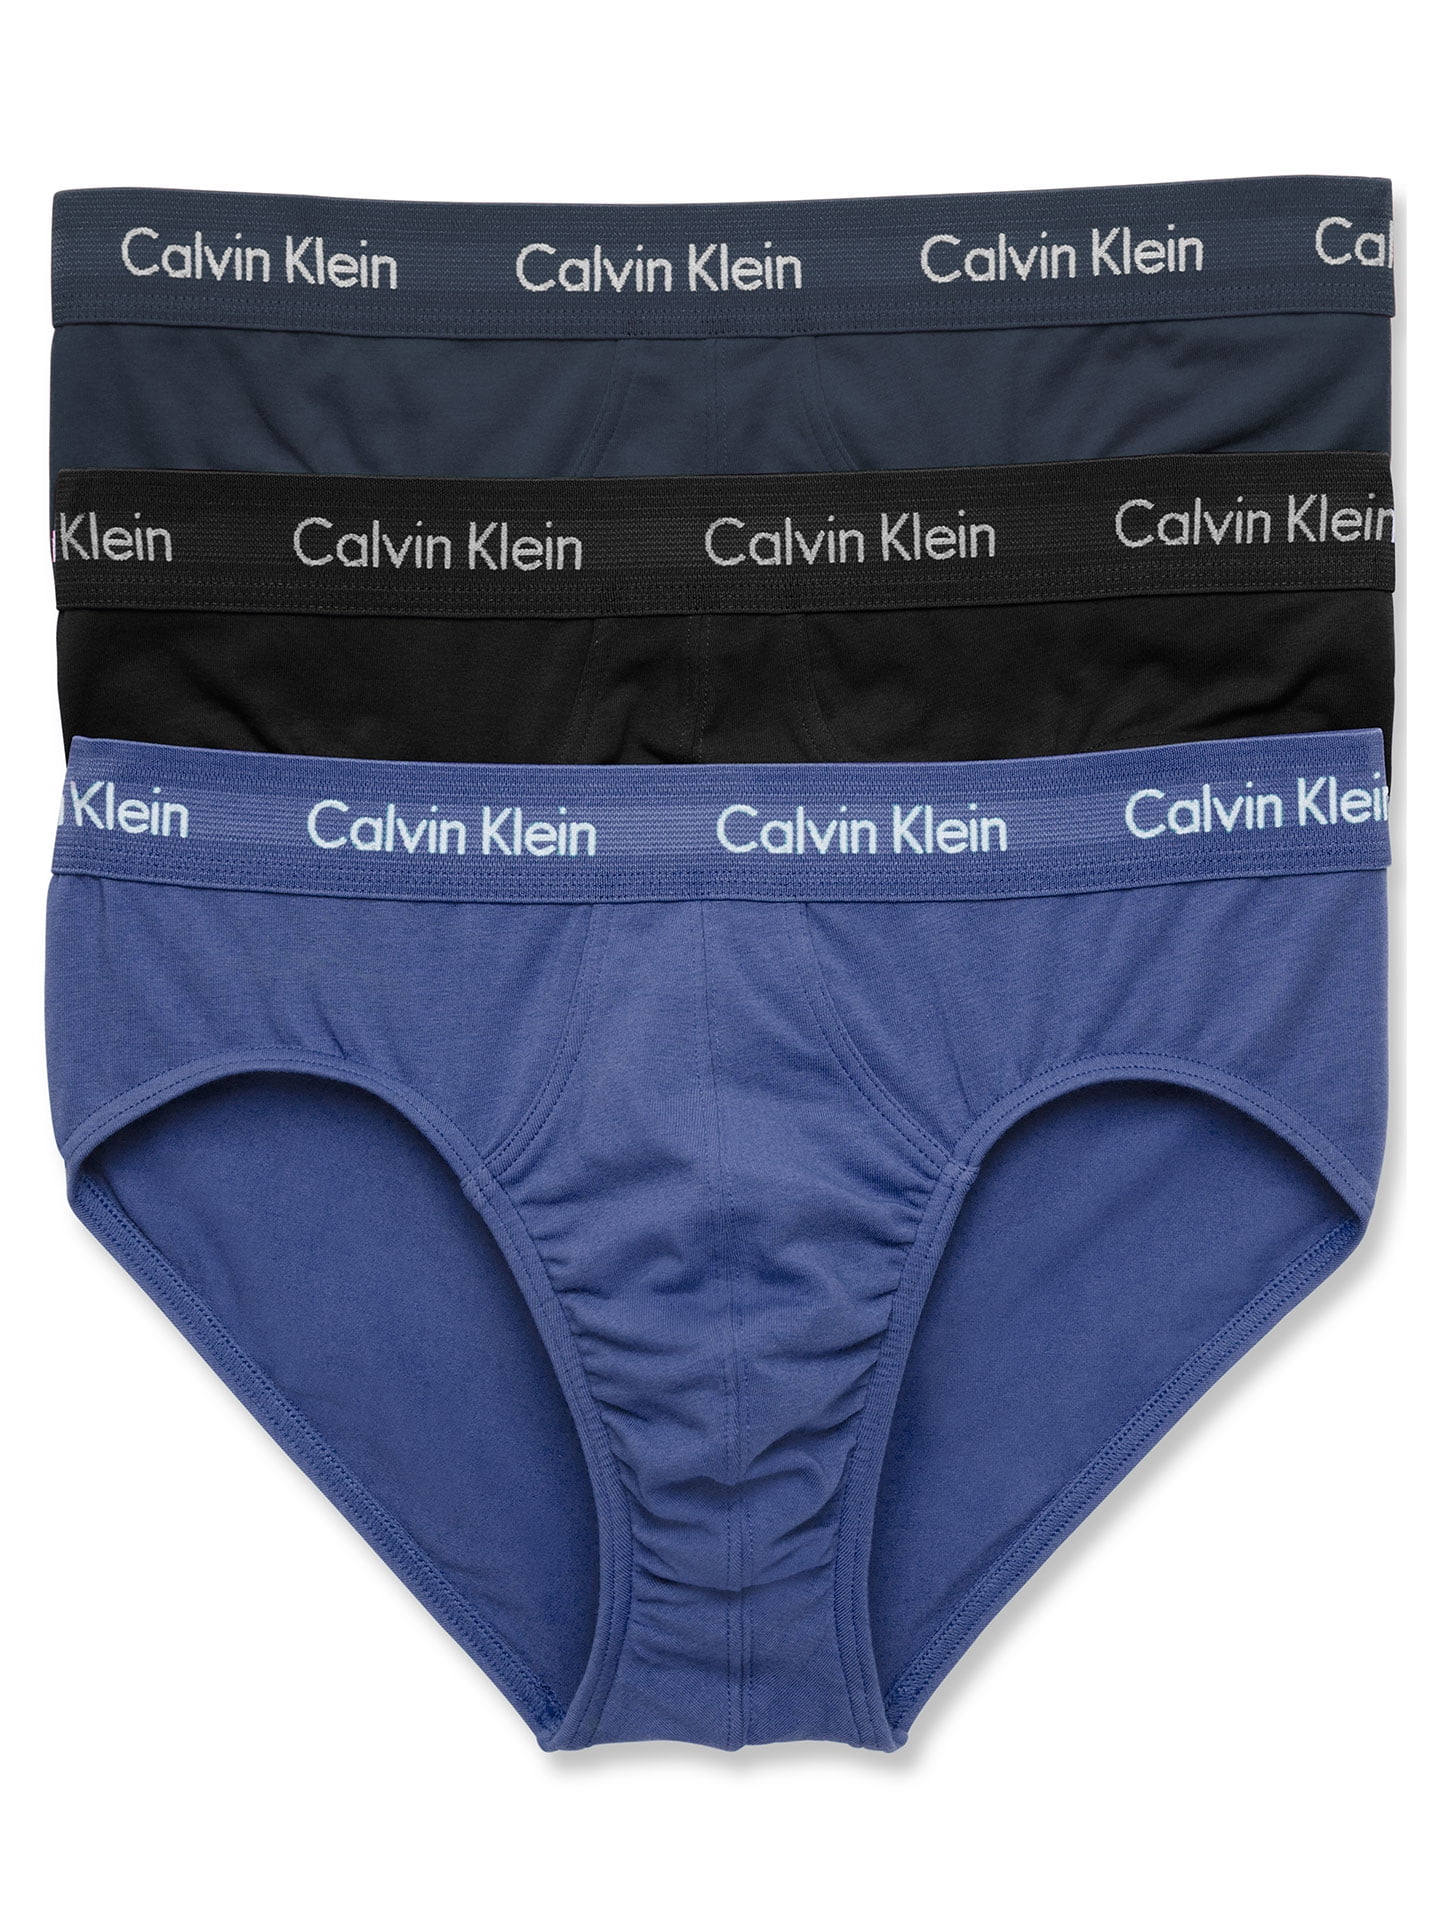 Calvin Klein Men's Micro Stretch 5-Pack Hip Brief, 2 Blue Shadow, Black,  Medium Grey, Cobalt, Small at  Men's Clothing store: Briefs Underwear